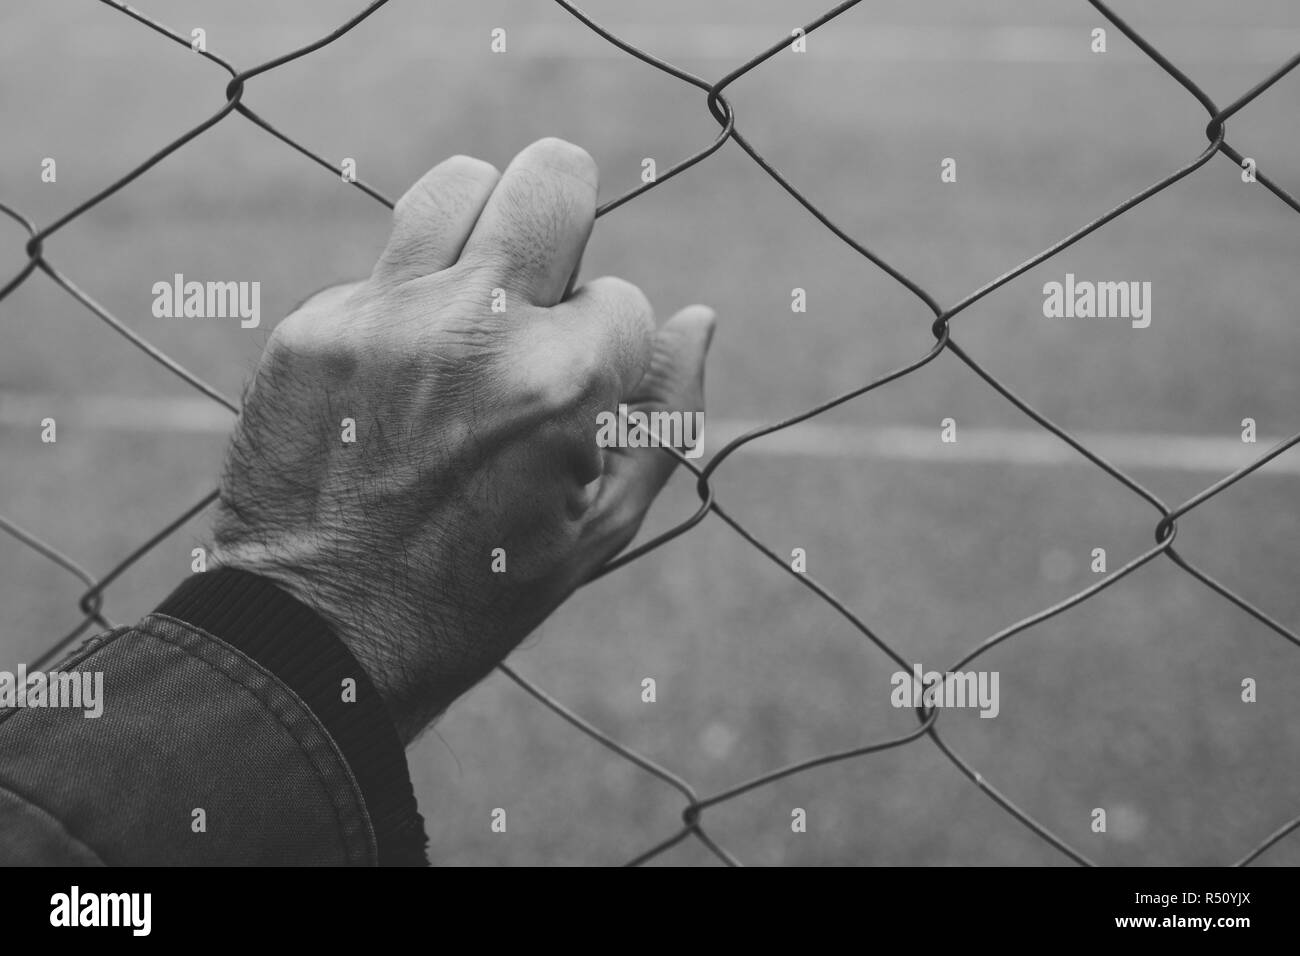 Männliche hand auf chainlink Fence, illegale Einwanderung Konzept Stockfoto